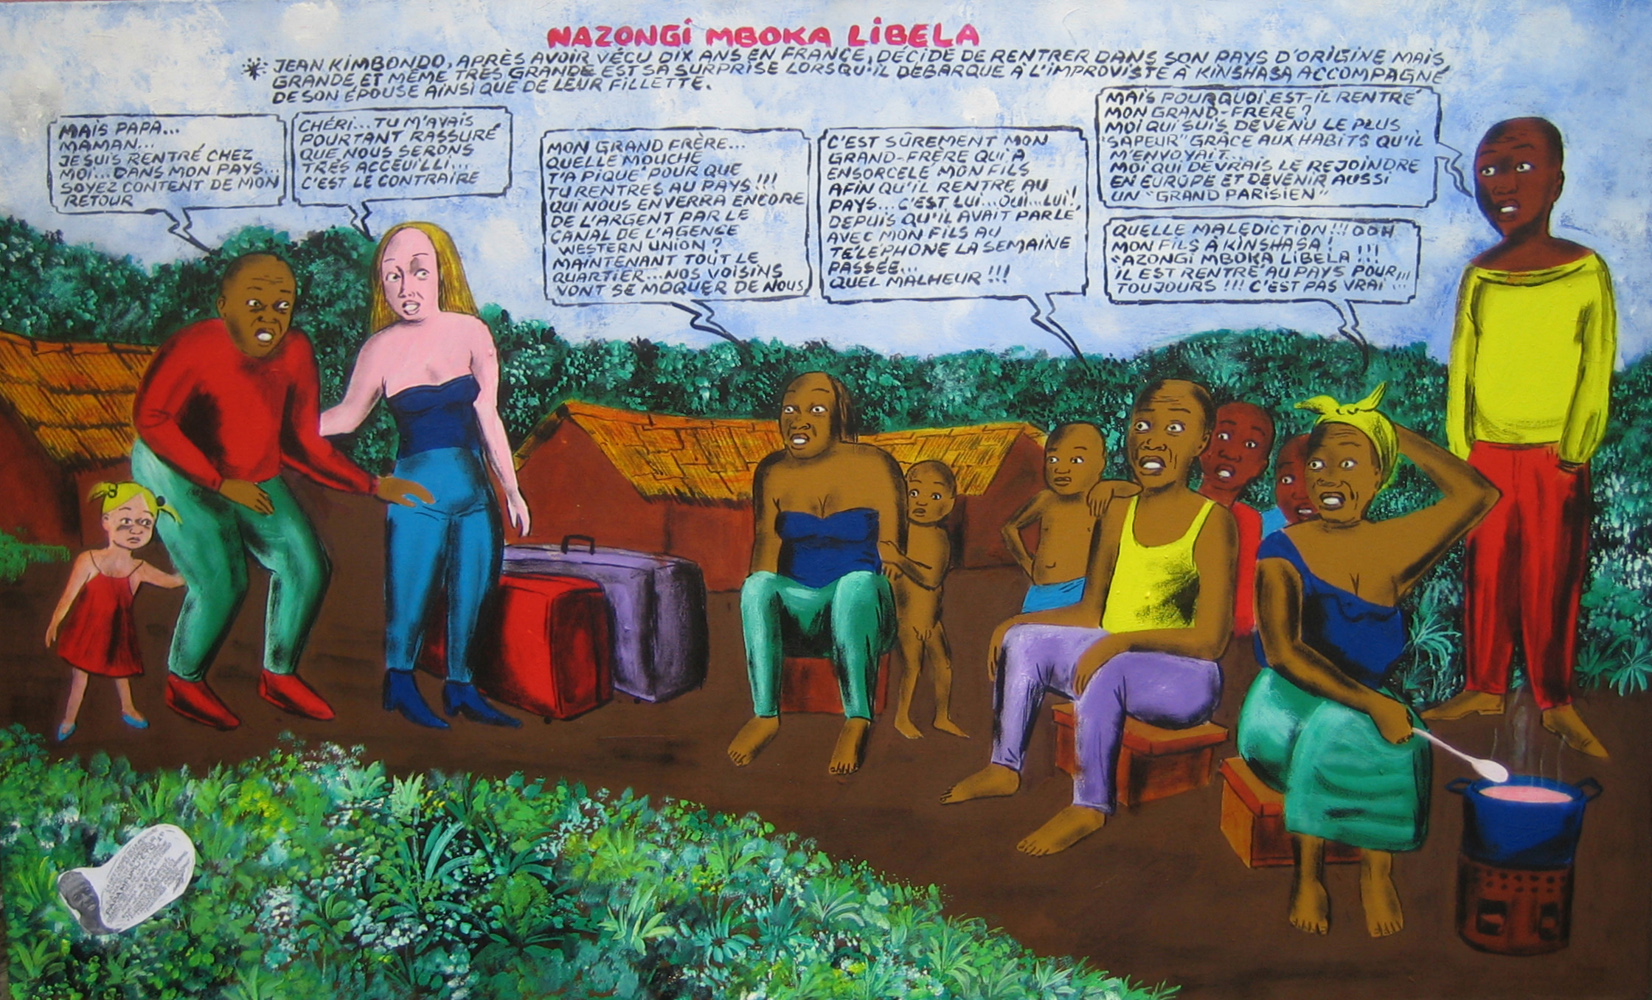 Nazongi mboka libela_2008_Papa Mfumu'eto 1er_galerie Angalia